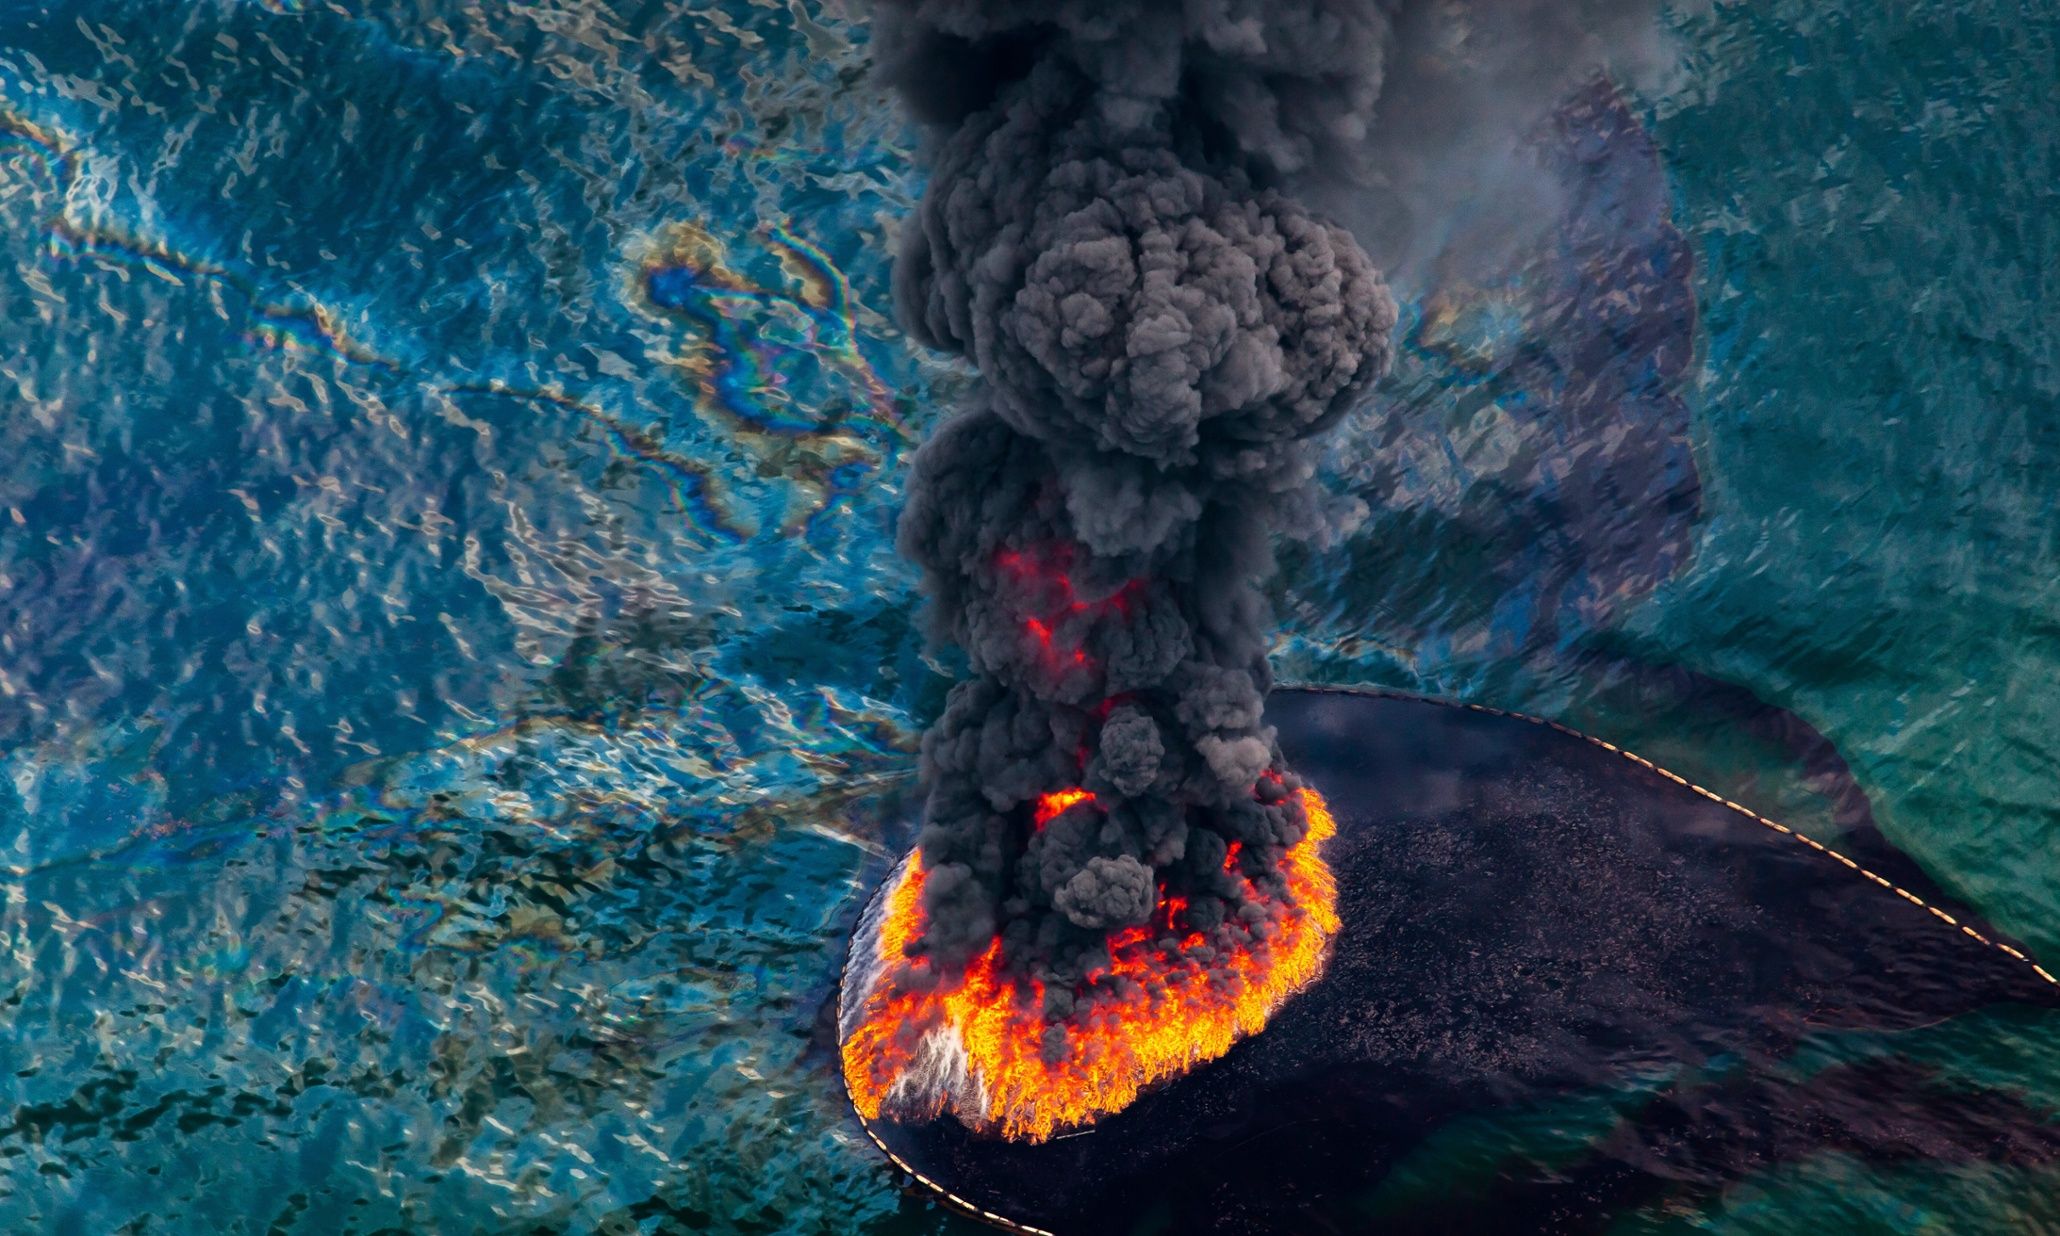 Взрыв на поверхности воды. Разлив нефти в мексиканском заливе 2010 разлив нефти. Взрыв на нефтяной платформе в мексиканском заливе 2010. Взрыв нефтяной платформы Deepwater Horizon. Взрыв нефтяной платформы Deepwater Horizon - 20 апреля 2010 года.